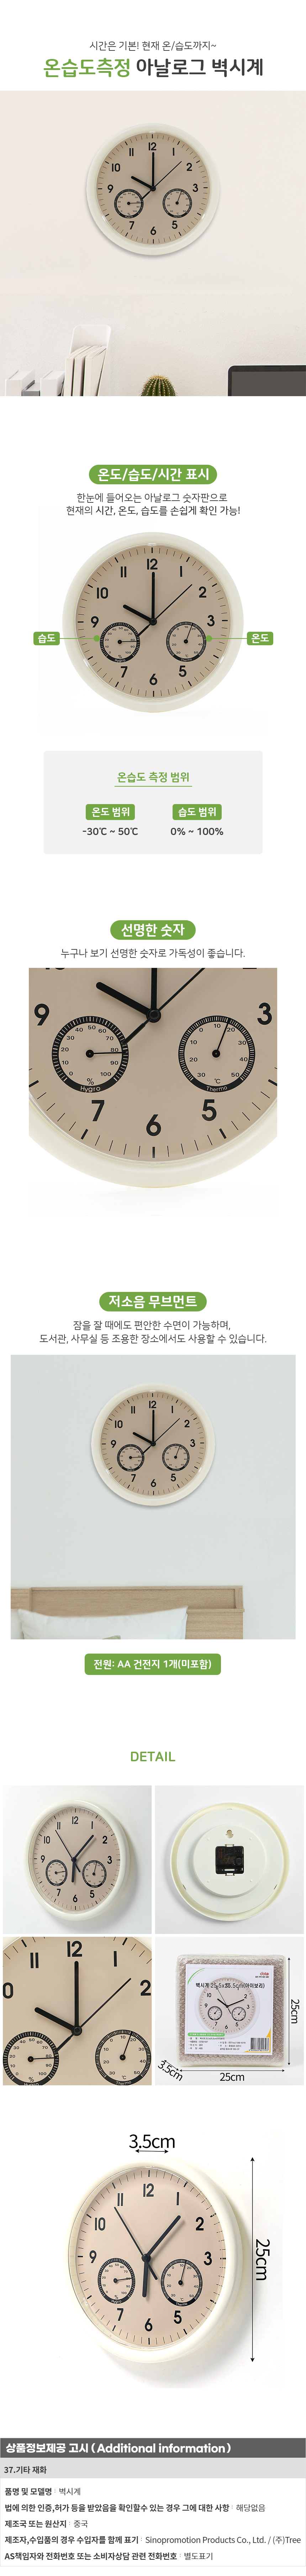 온습도계 벽시계 25cm 학원 로고 인쇄 벽걸이시계